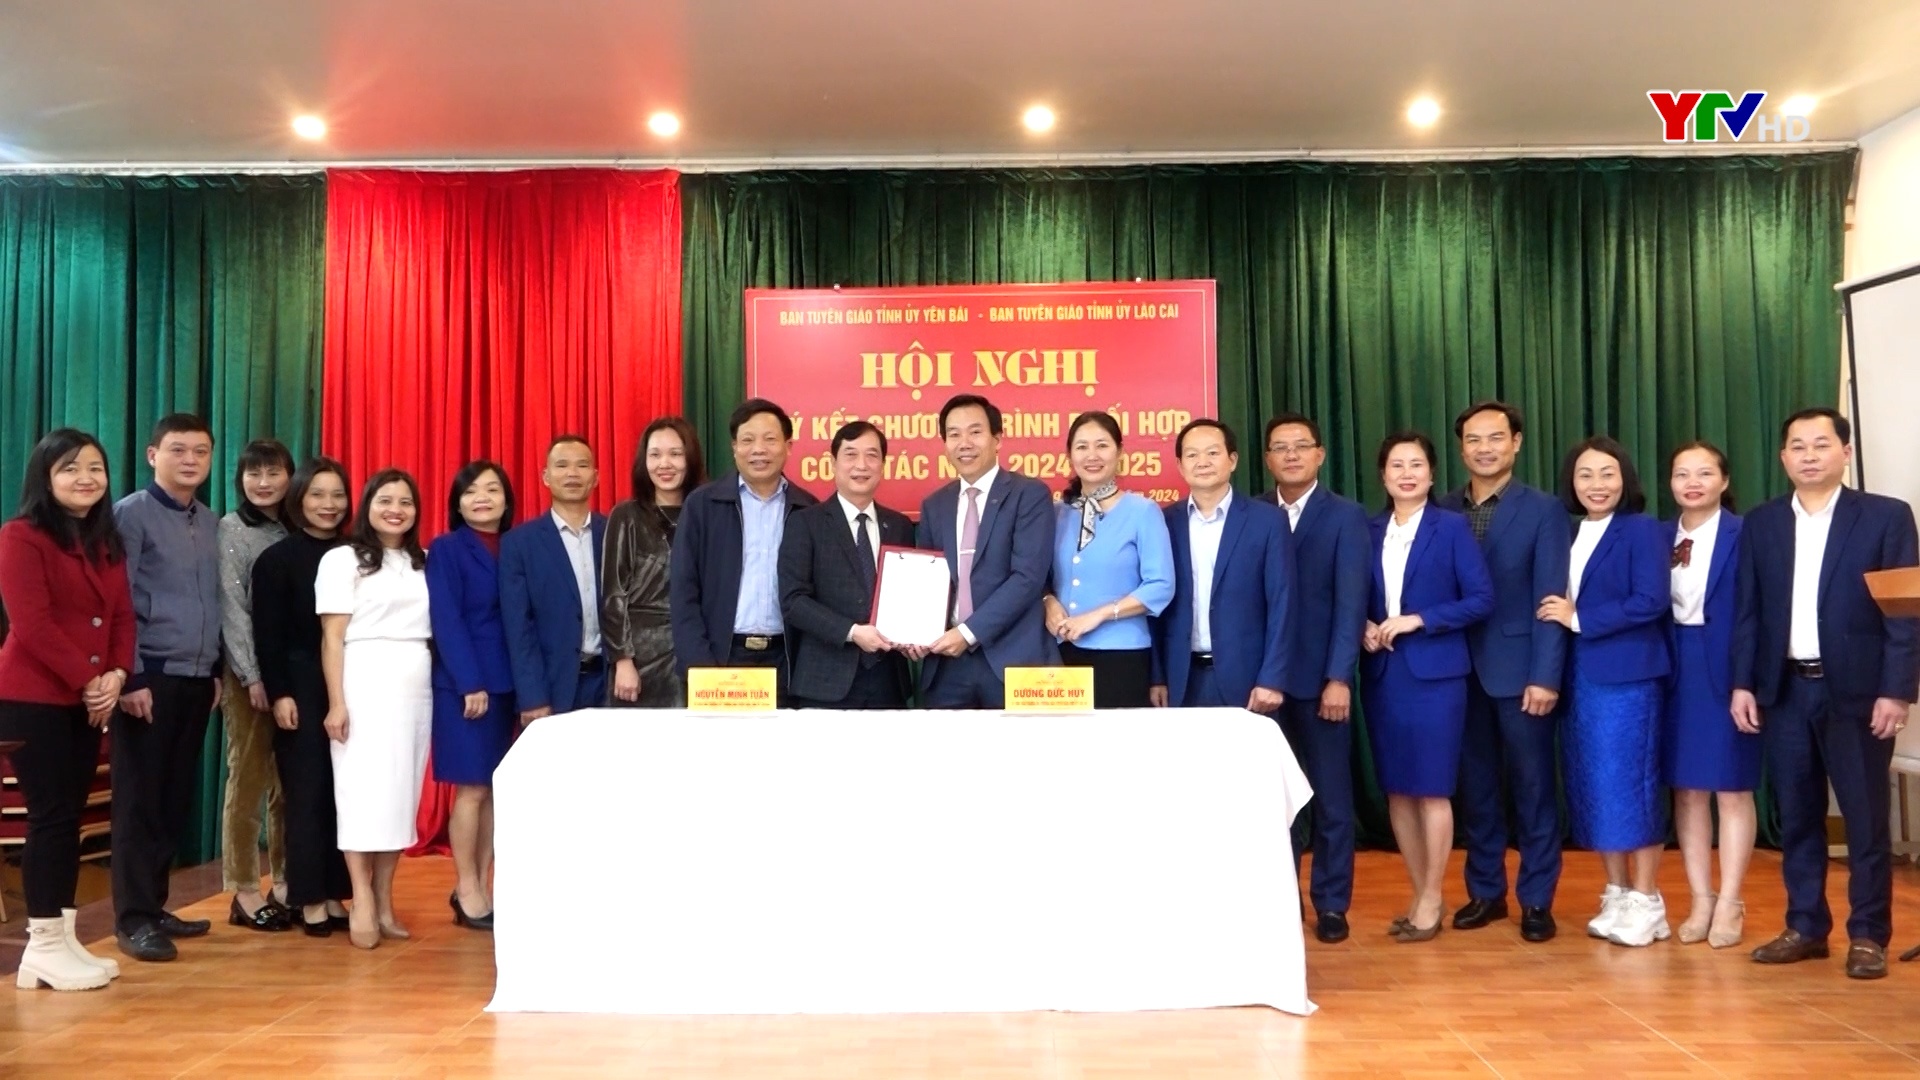 Ban Tuyên giáo Tỉnh uỷ Yên Bái và Lào Cai ký kết chương trình phối hợp công tác giai đoạn 2024-2025